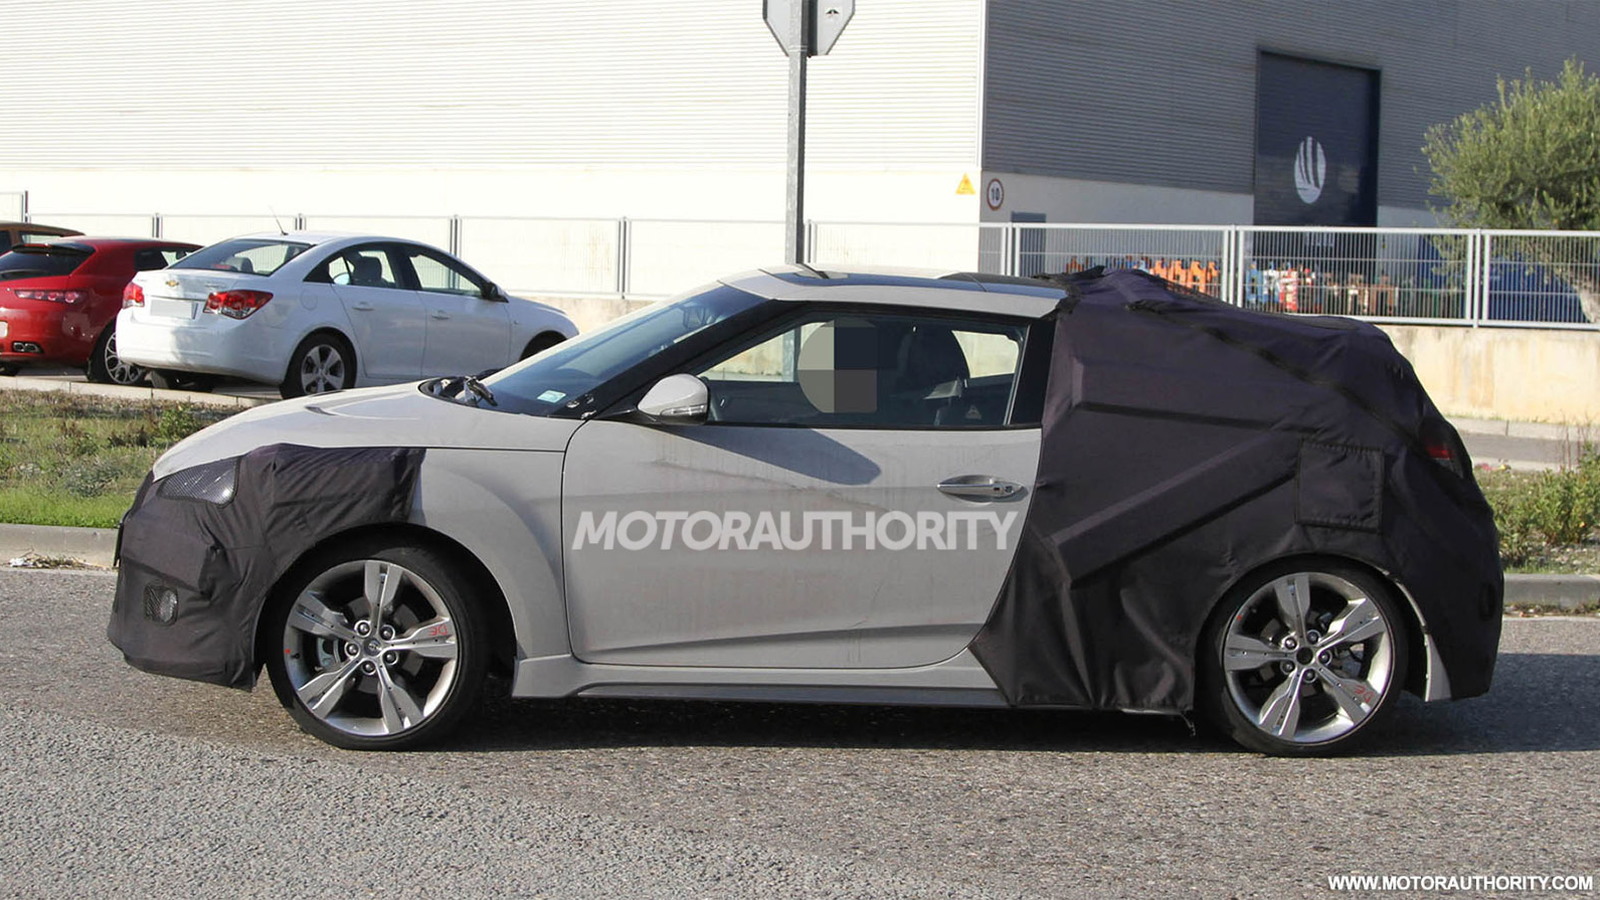 2013 Hyundai Veloster Turbo spy shots